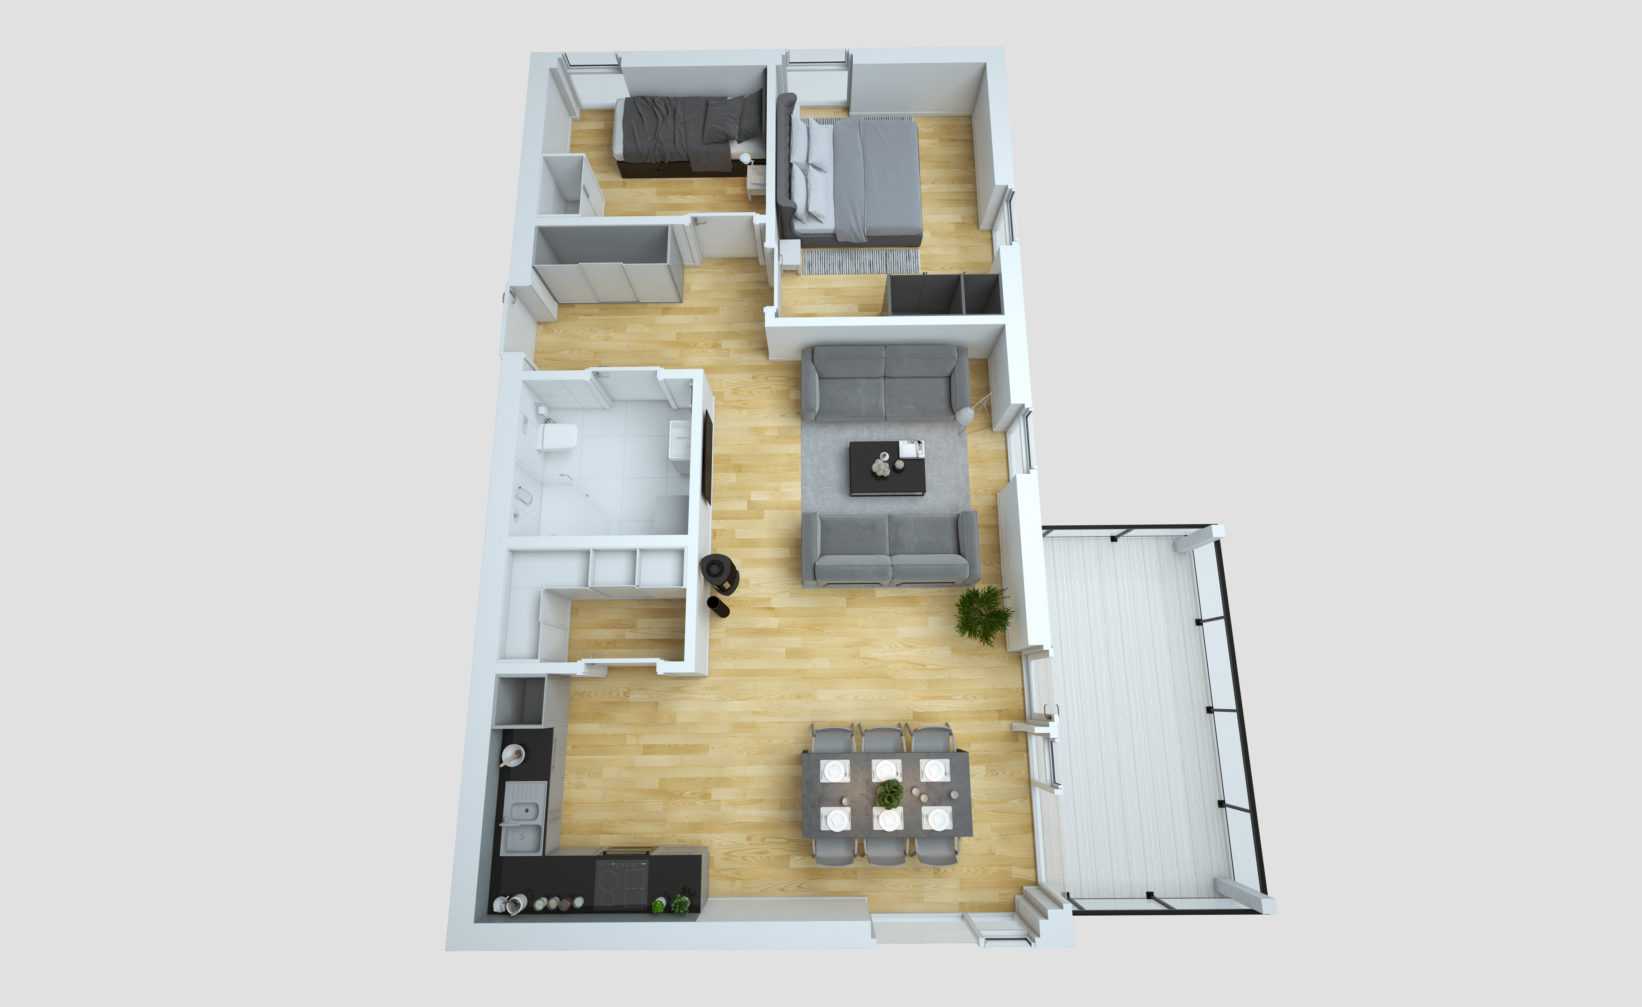 Visualisering for salg av planløsning av en toroms leilighet for Klient: Opthimal i 2016.